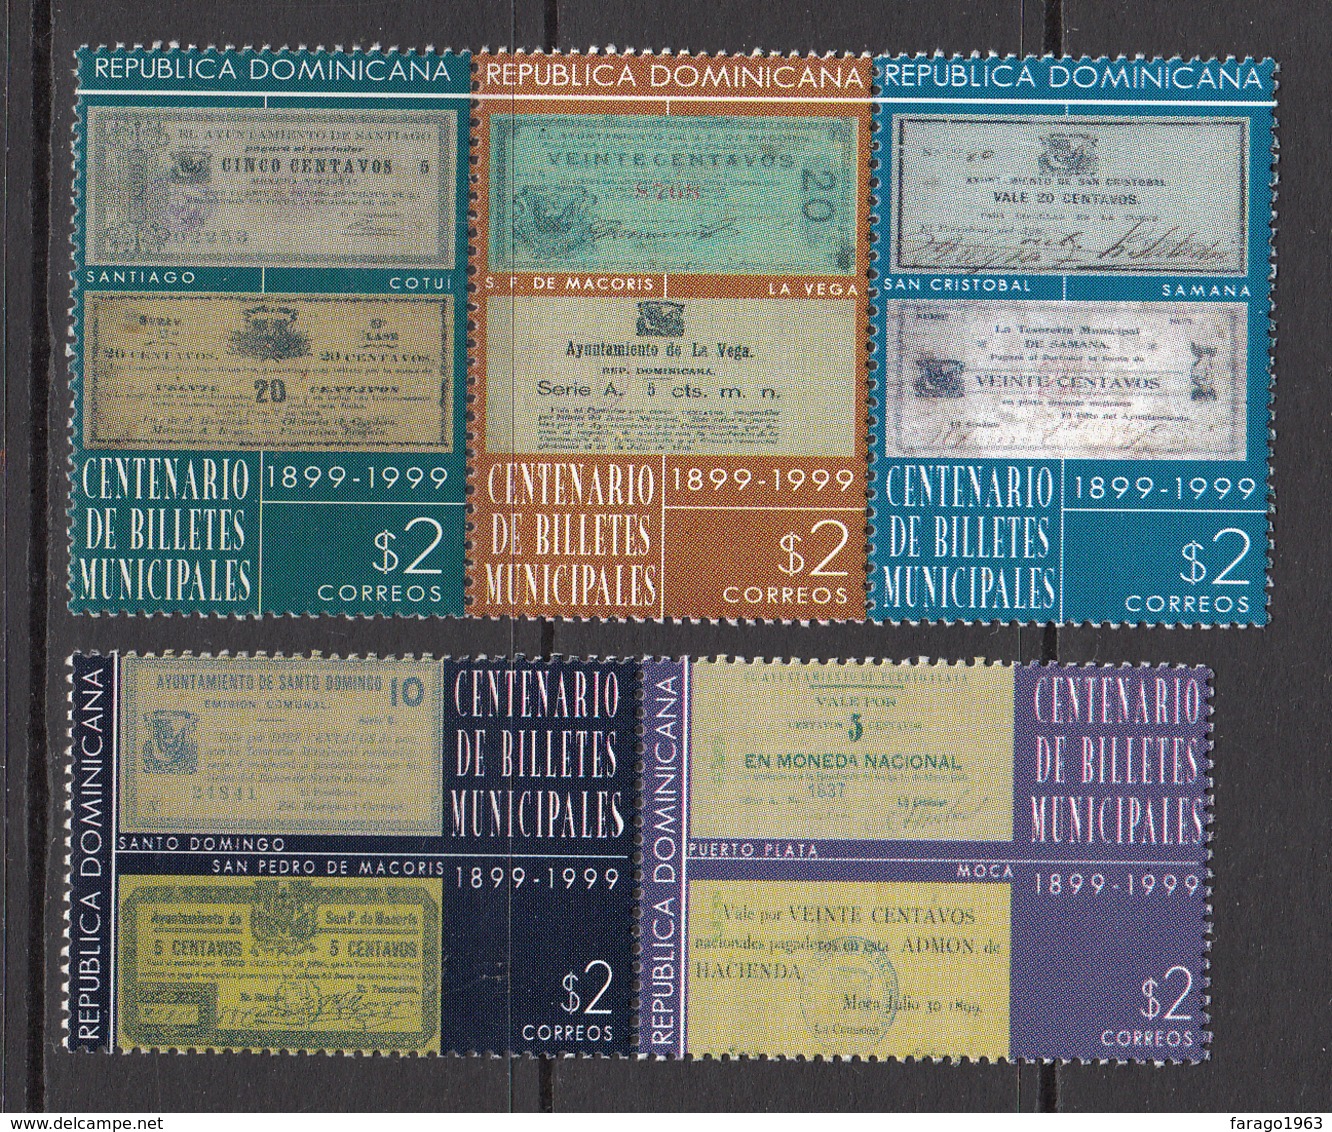 1999 Dominican Republic Dominicana  Municipal Notes Banknotes Monnaie Complete Set Of 5  MNH - Dominicaine (République)